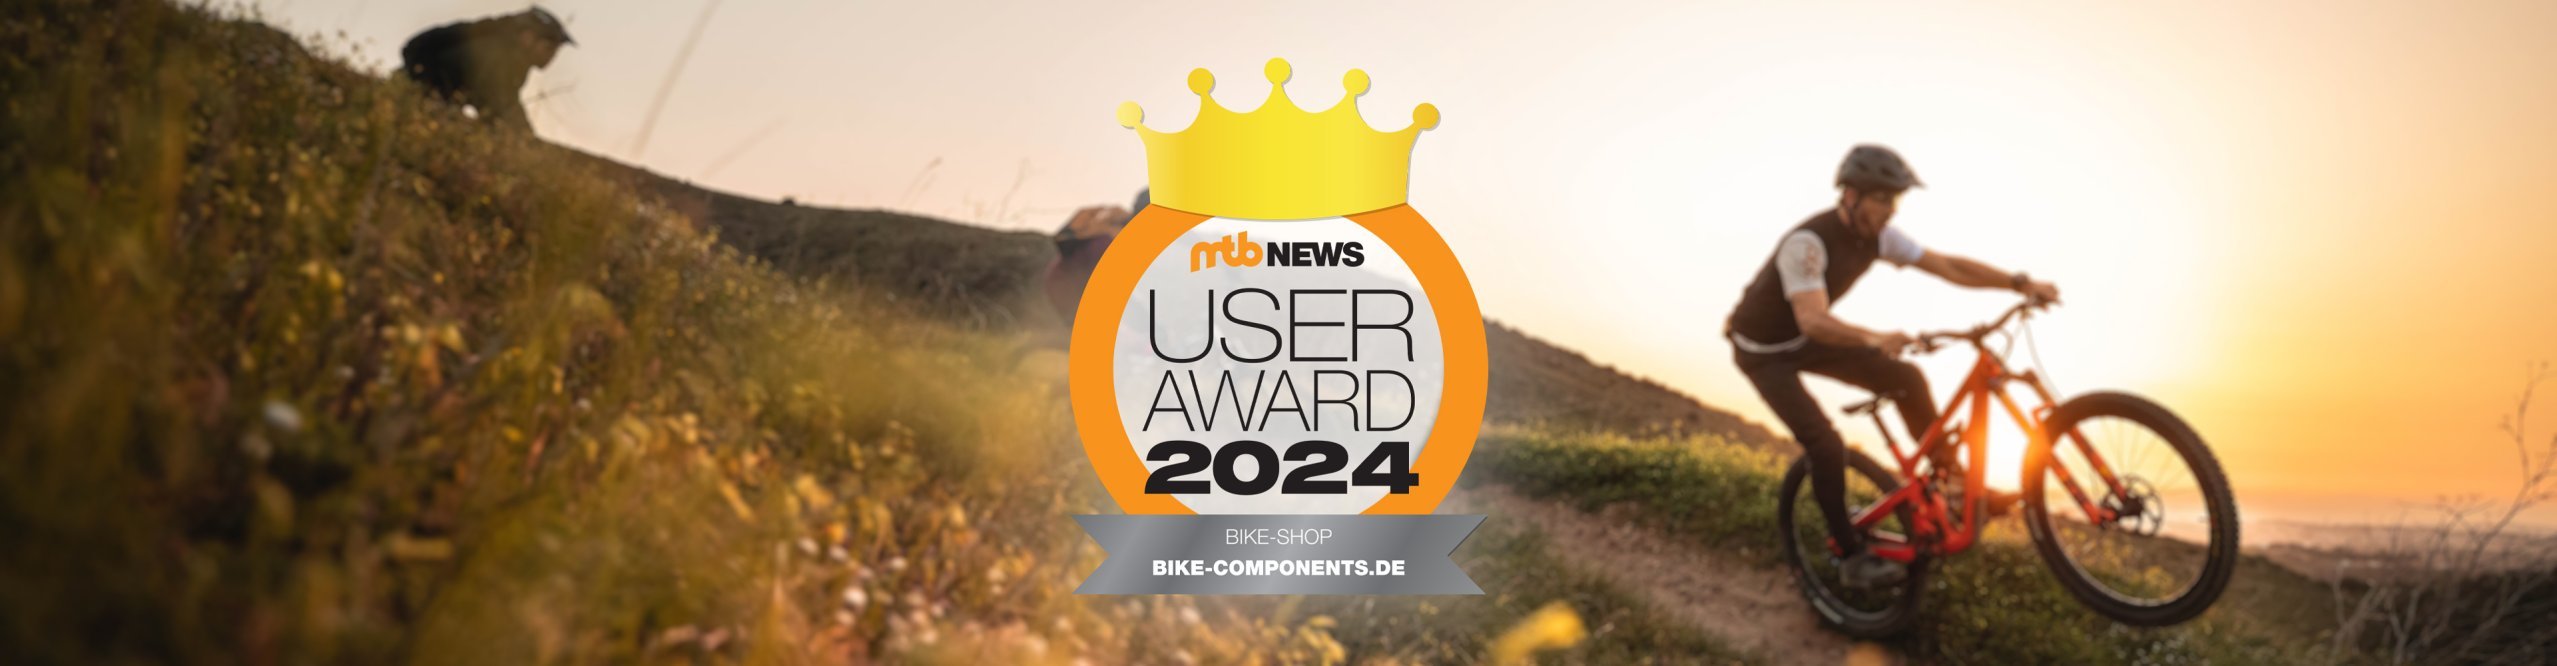 News Award Header Desktop